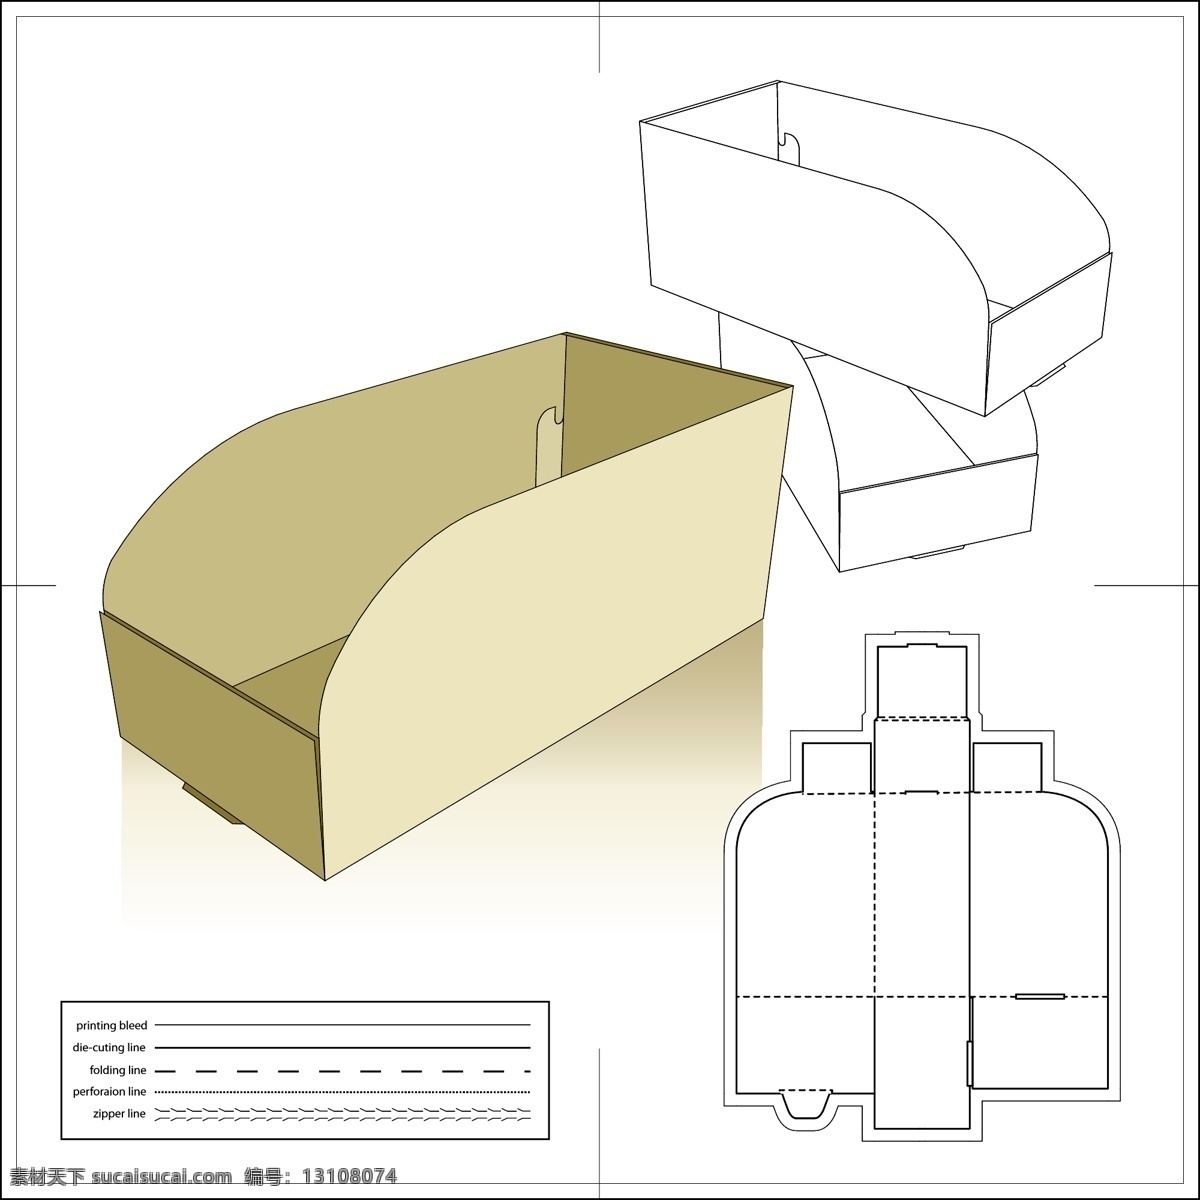 矢量 包装 模板 版式 包装盒 包装箱 刀版 矢量素材 异形板 纸盒 模切板 印刷版 矢量图